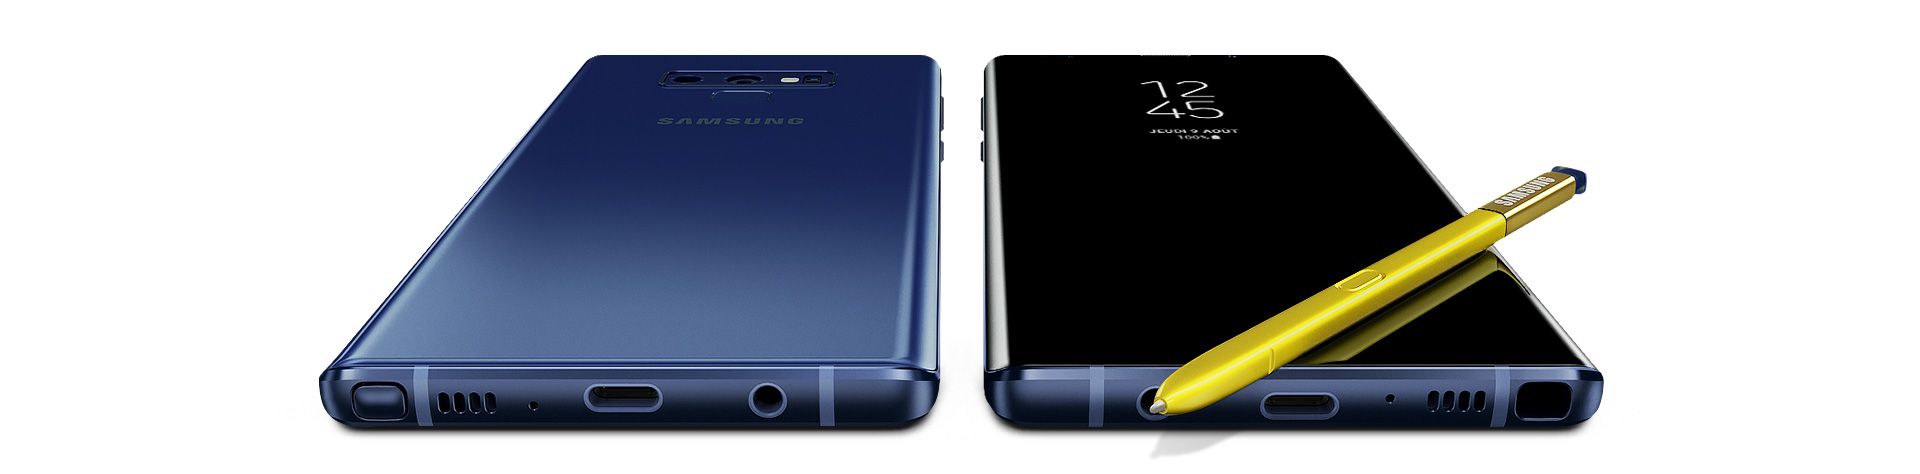 Deux Galaxy Note 9, l'un vu de l'arriÃ¨re et l'autre vu de face, avec le S Pen posÃ© sur l'Ã©cran